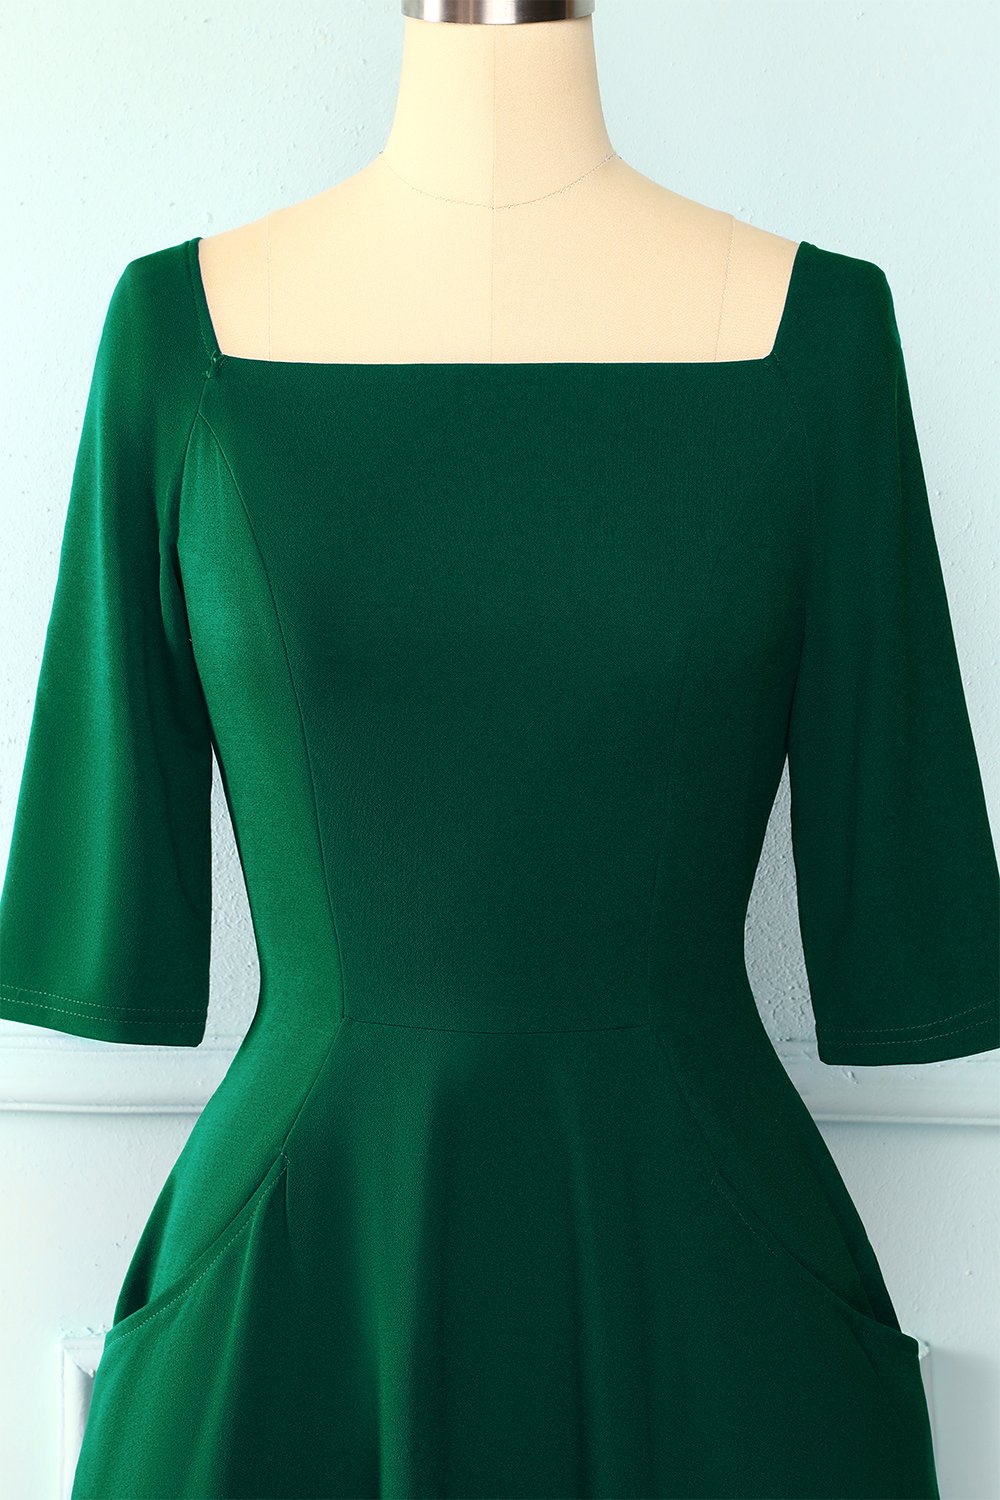 Green Pockets Vintage Dress